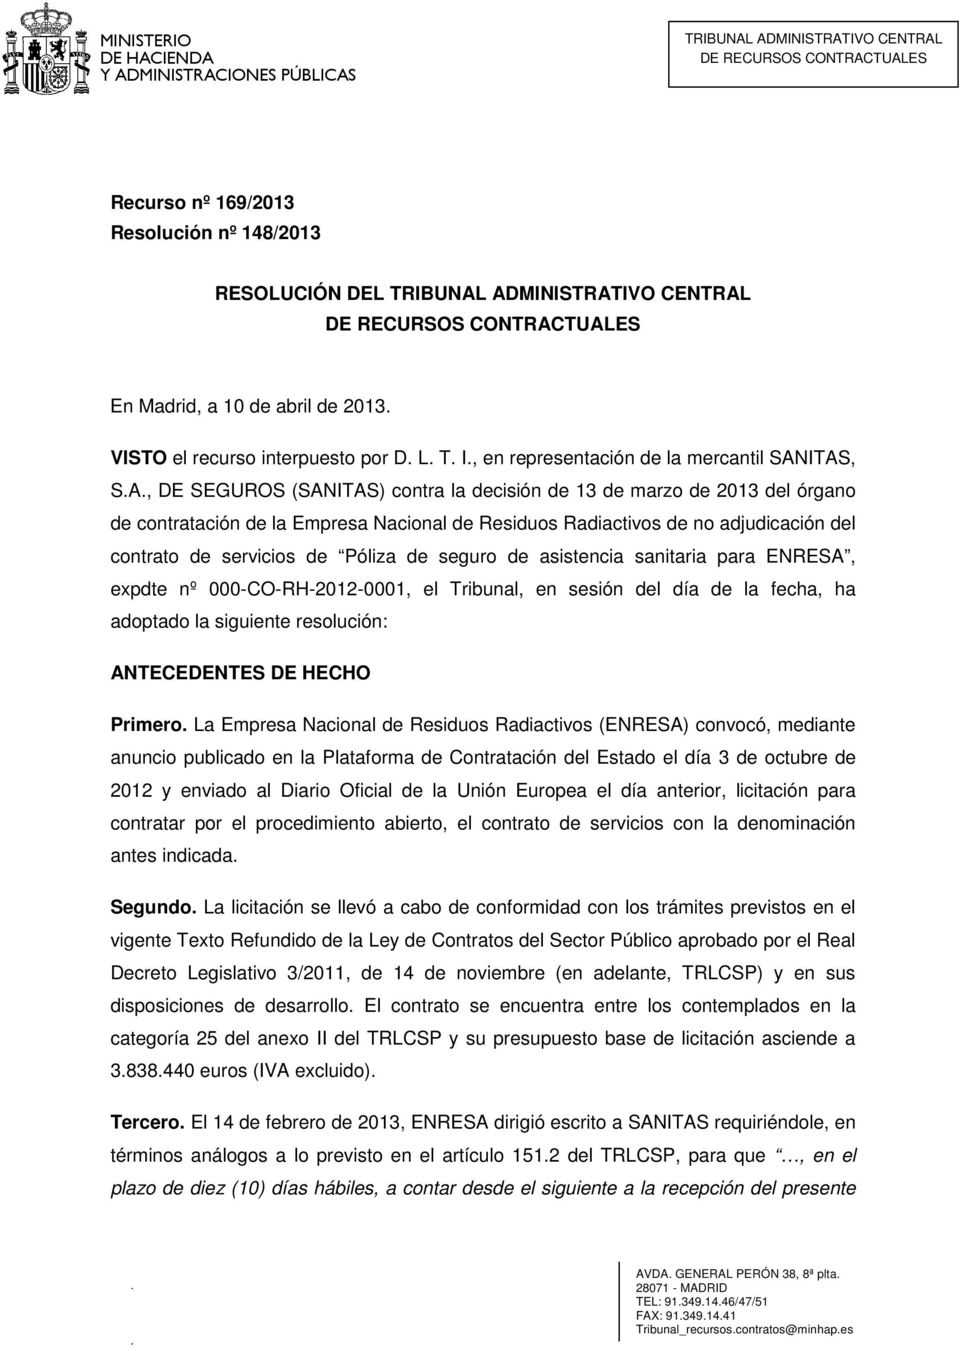 ITAS, S.A., DE SEGUROS (SANITAS) contra la decisión de 13 de marzo de 2013 del órgano de contratación de la Empresa Nacional de Residuos Radiactivos de no adjudicación del contrato de servicios de